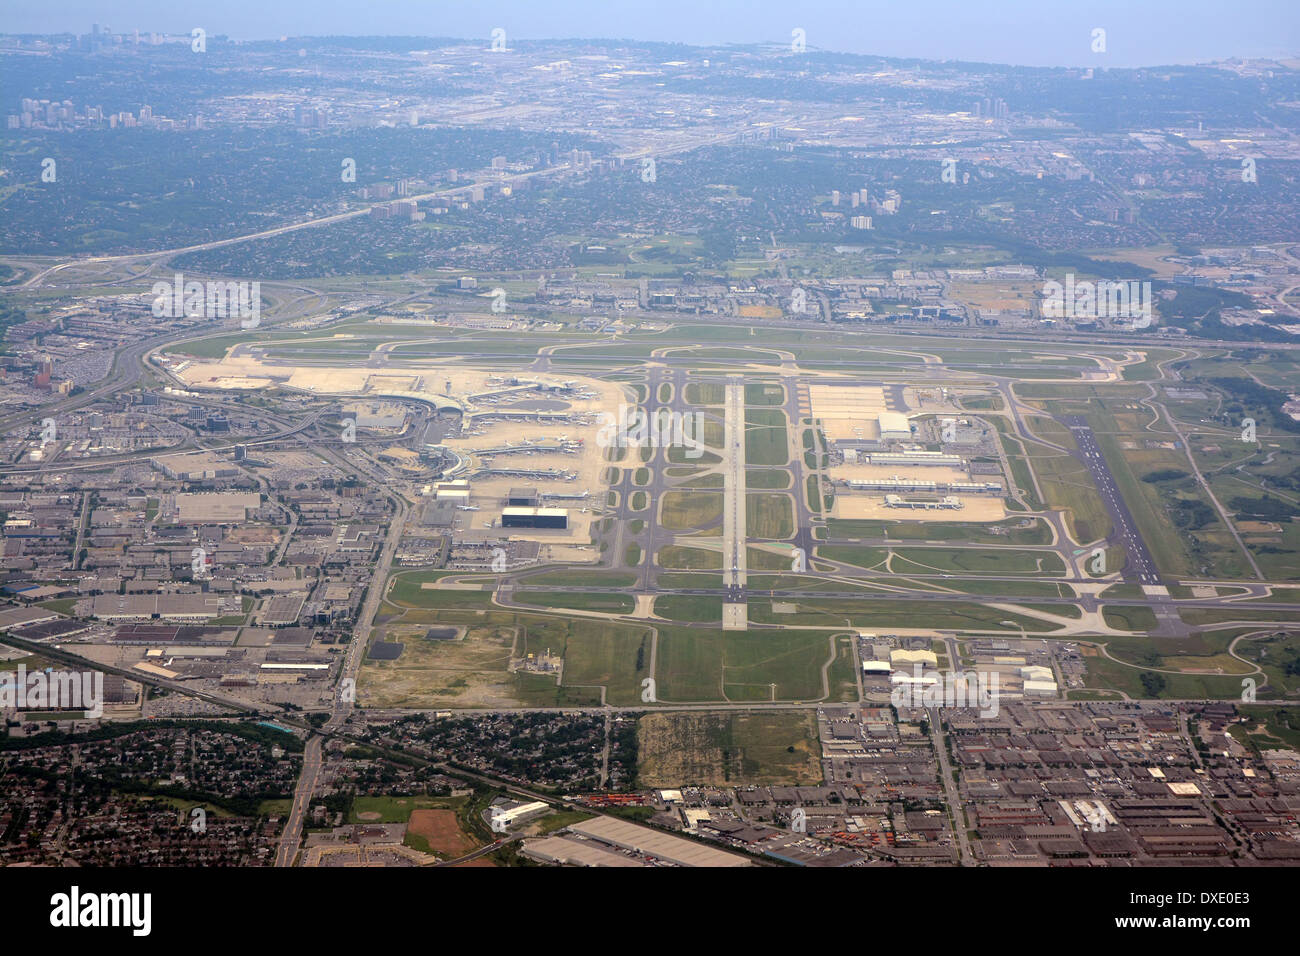 Vue aérienne de l'aéroport Pearson, Toronto, Canada. Banque D'Images